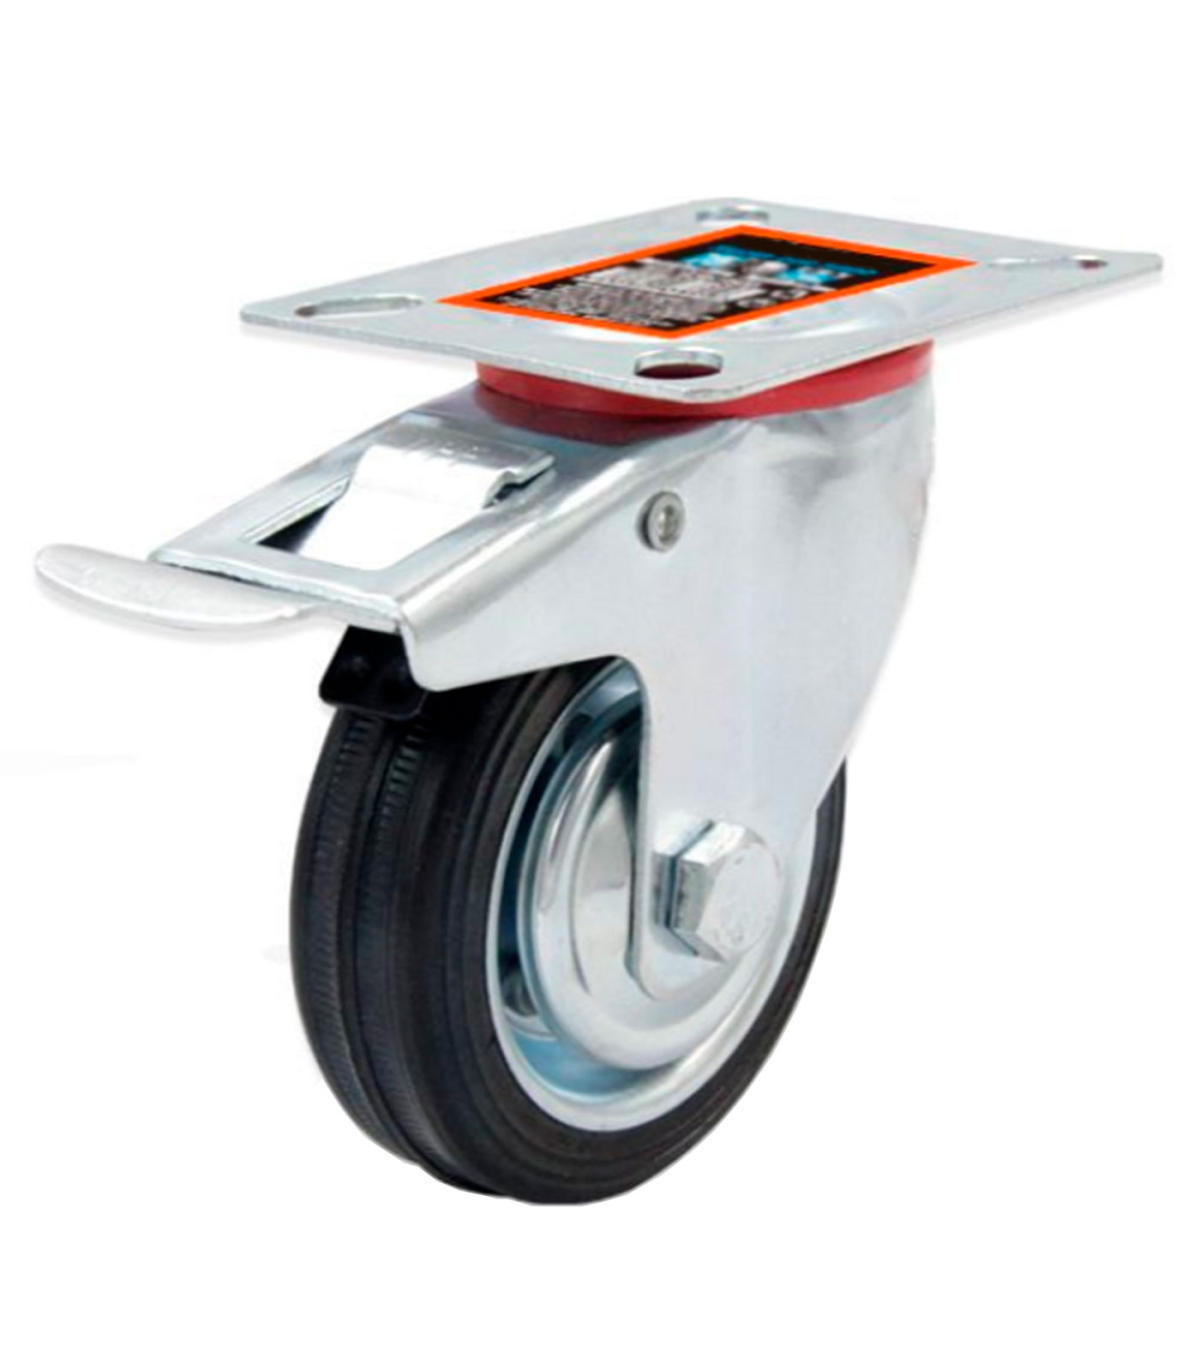 Tradineur - Rueda giratoria con freno para muebles, goma y hierro, incluye  placa de montaje, rueda de transporte para cargas pes